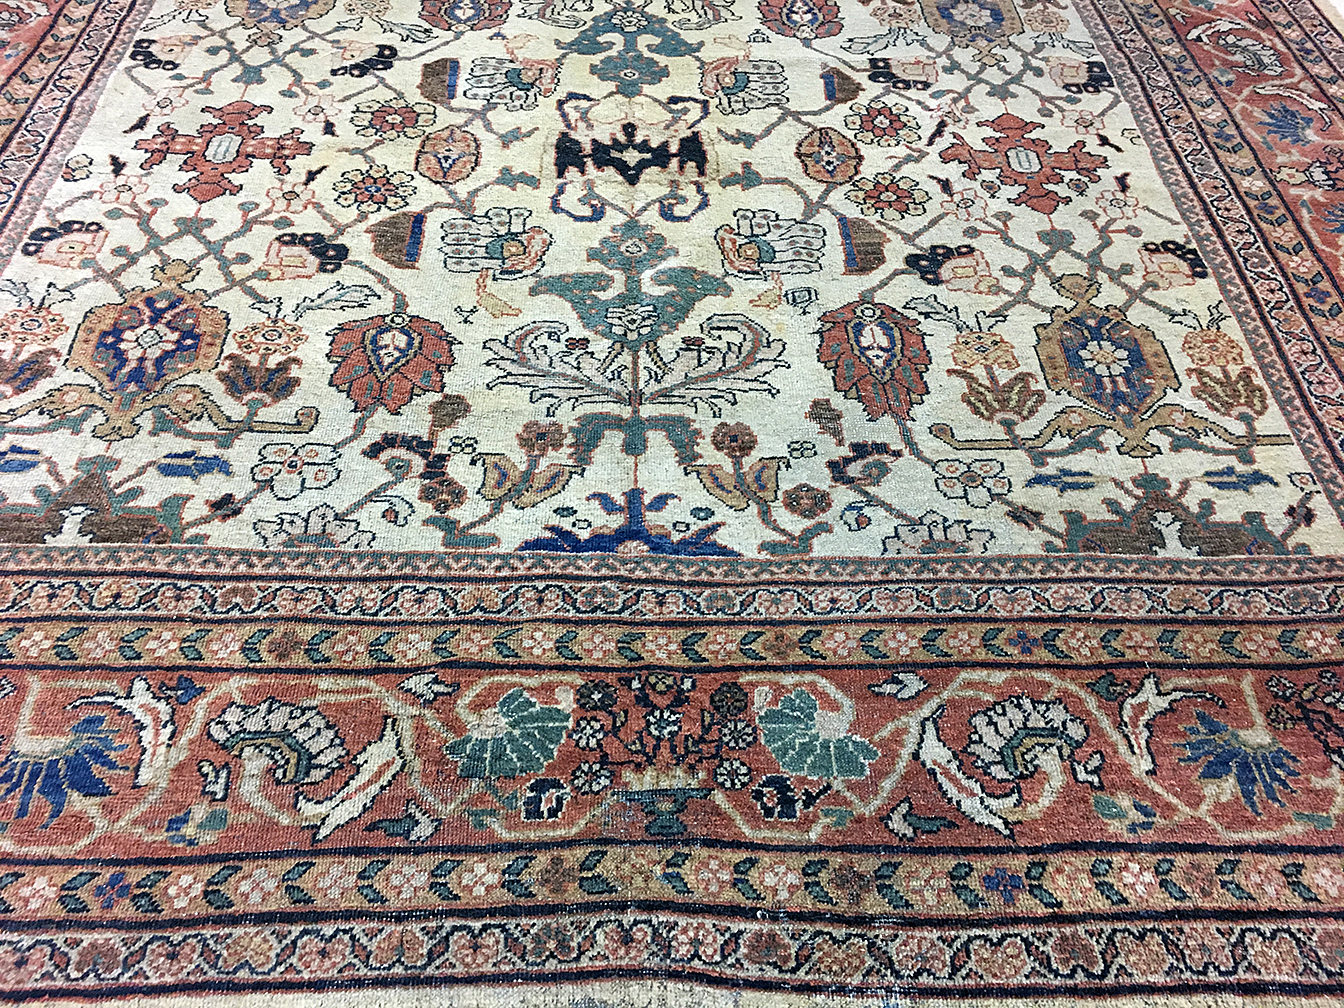 Antique mahal Carpet - # 55274